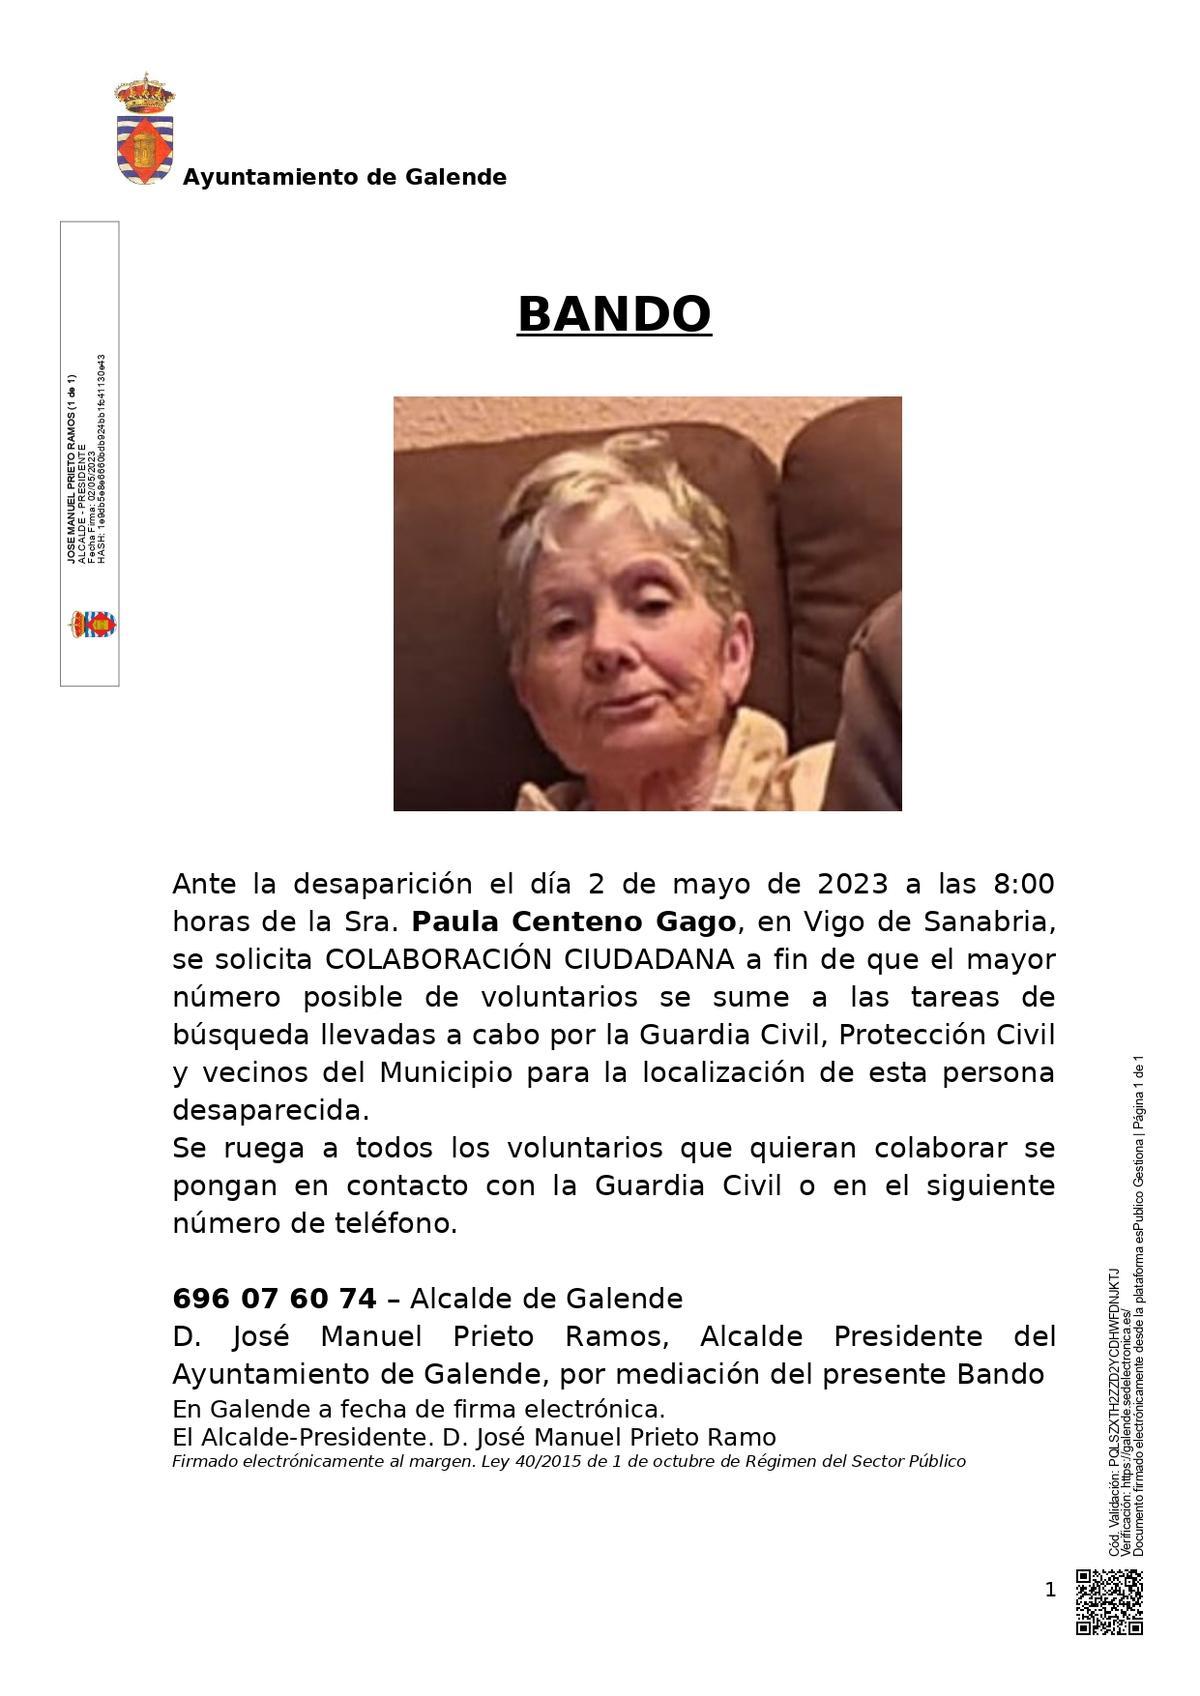 Bando del Ayuntamiento de Galende sobre la mujer desaparecida en Vigo de Sanabria.